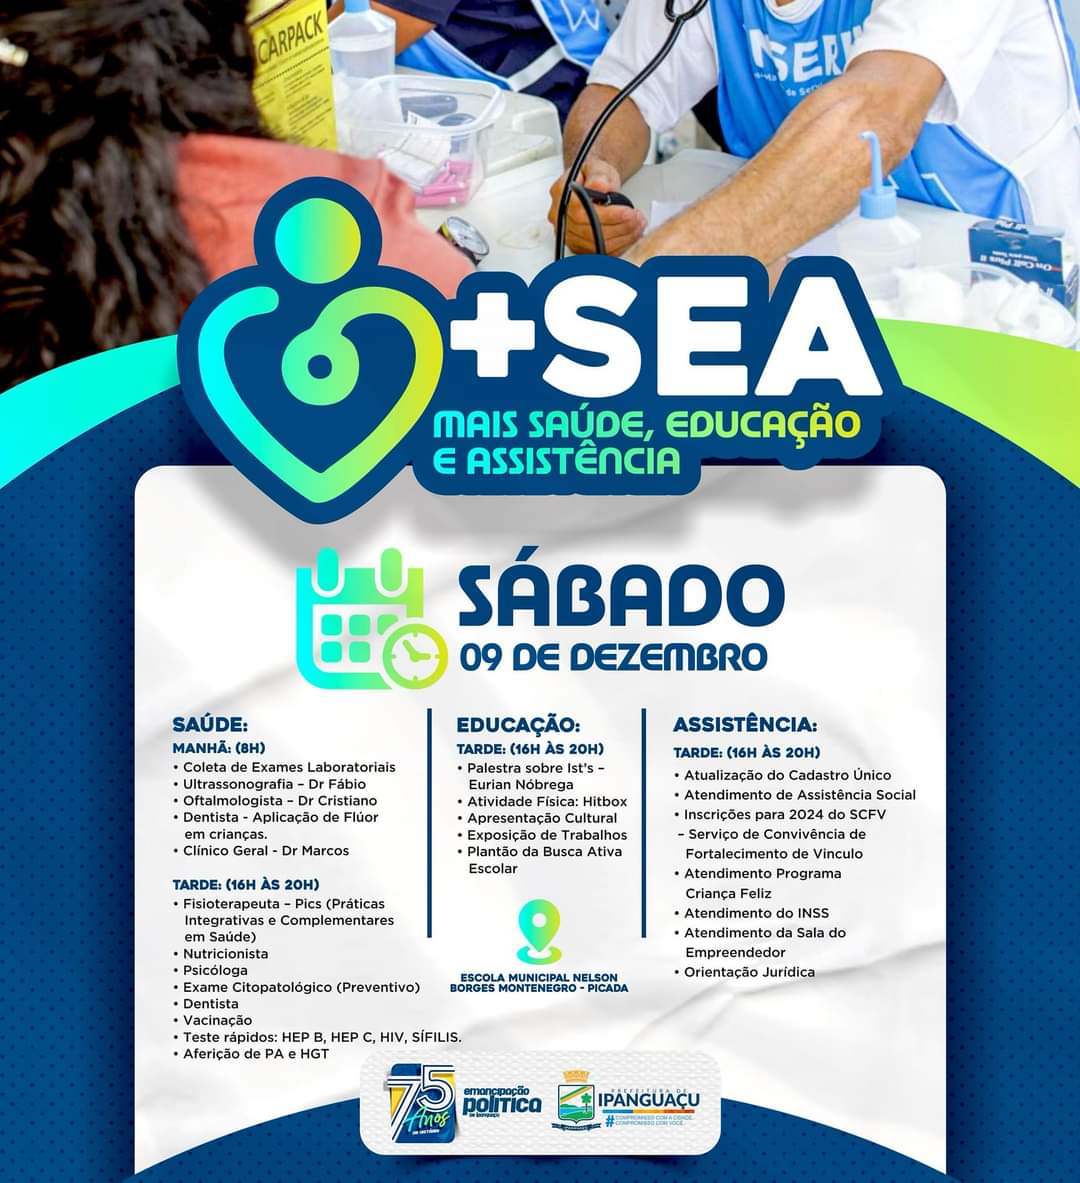 Ipanguaçu 75 Anos: Prefeitura vai lançar projeto + Saúde, Educação e Assistência (SEA)